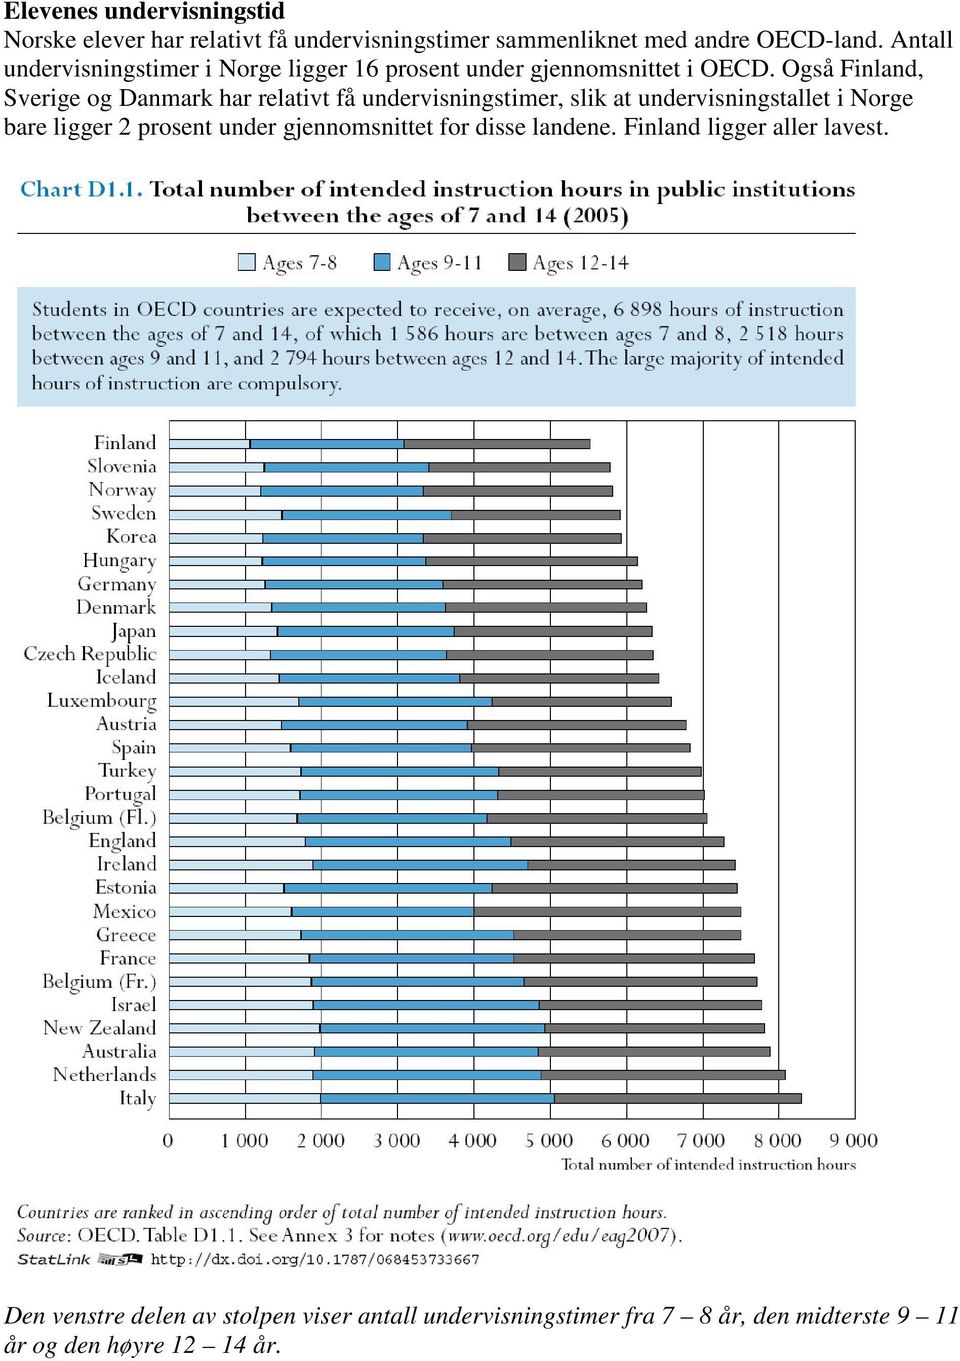 Også Finland, Sverige og Danmark har relativt få undervisningstimer, slik at undervisningstallet i Norge bare ligger 2